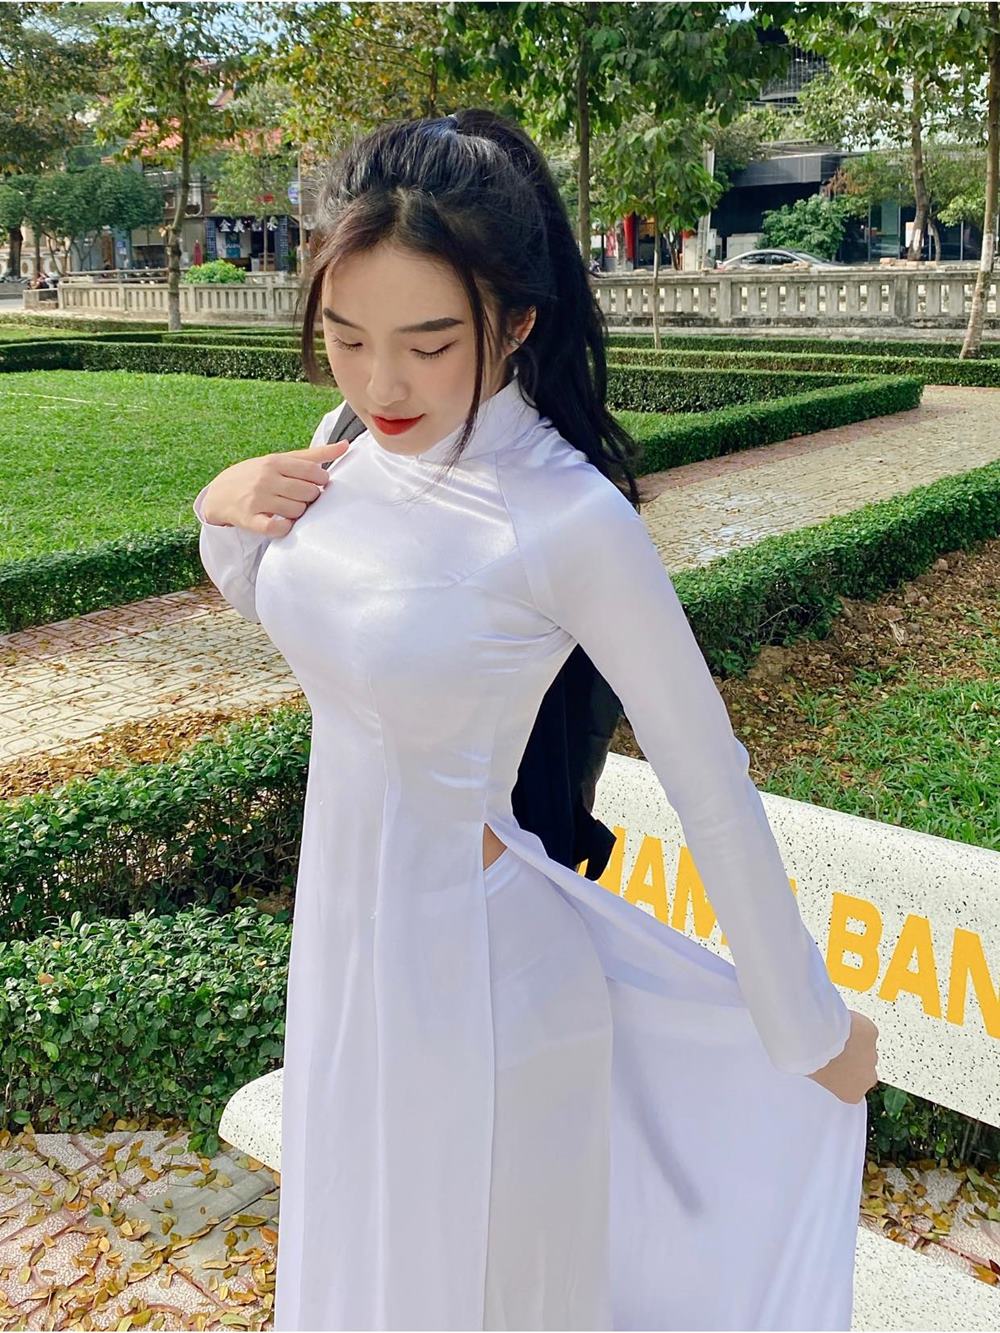 Phan Thị Bảo Trân được gọi là "thiên thần áo dài" nhờ mặc đẹp trang phục nữ sinh truyền thống.